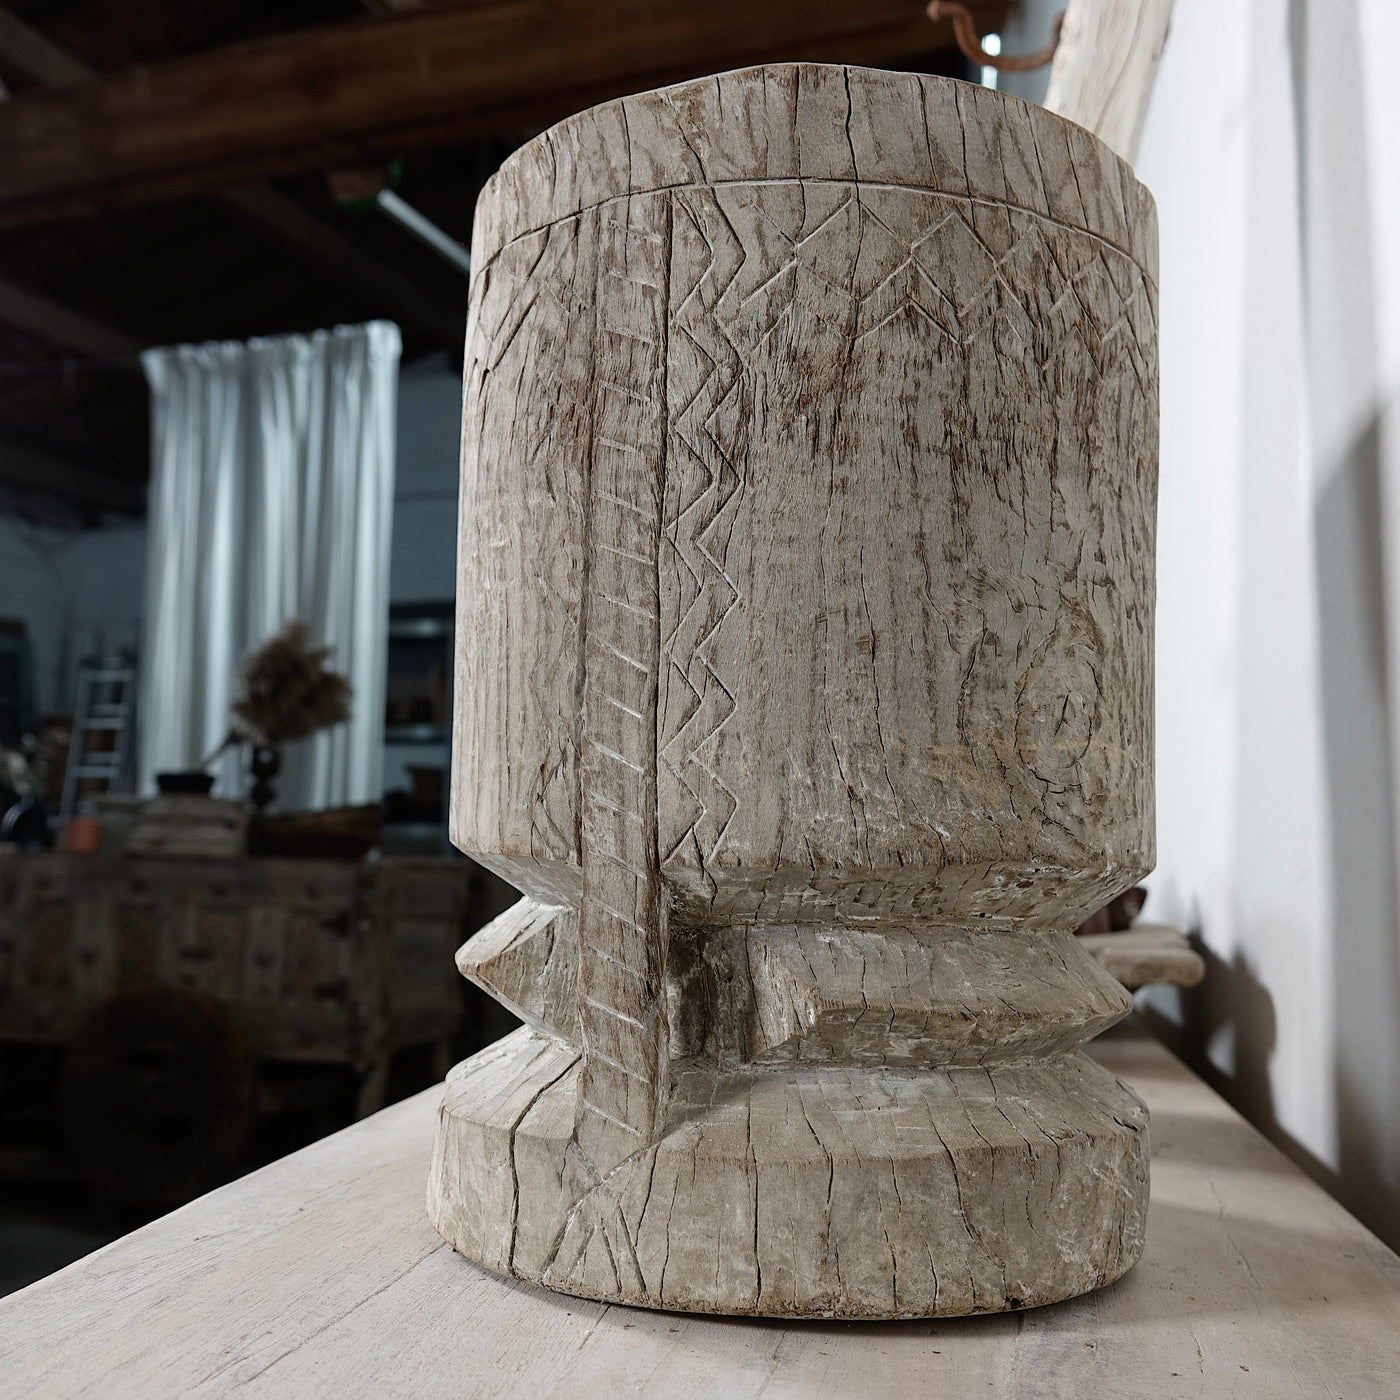 Okhli n°5 - Ancien mortier sculpté en bois